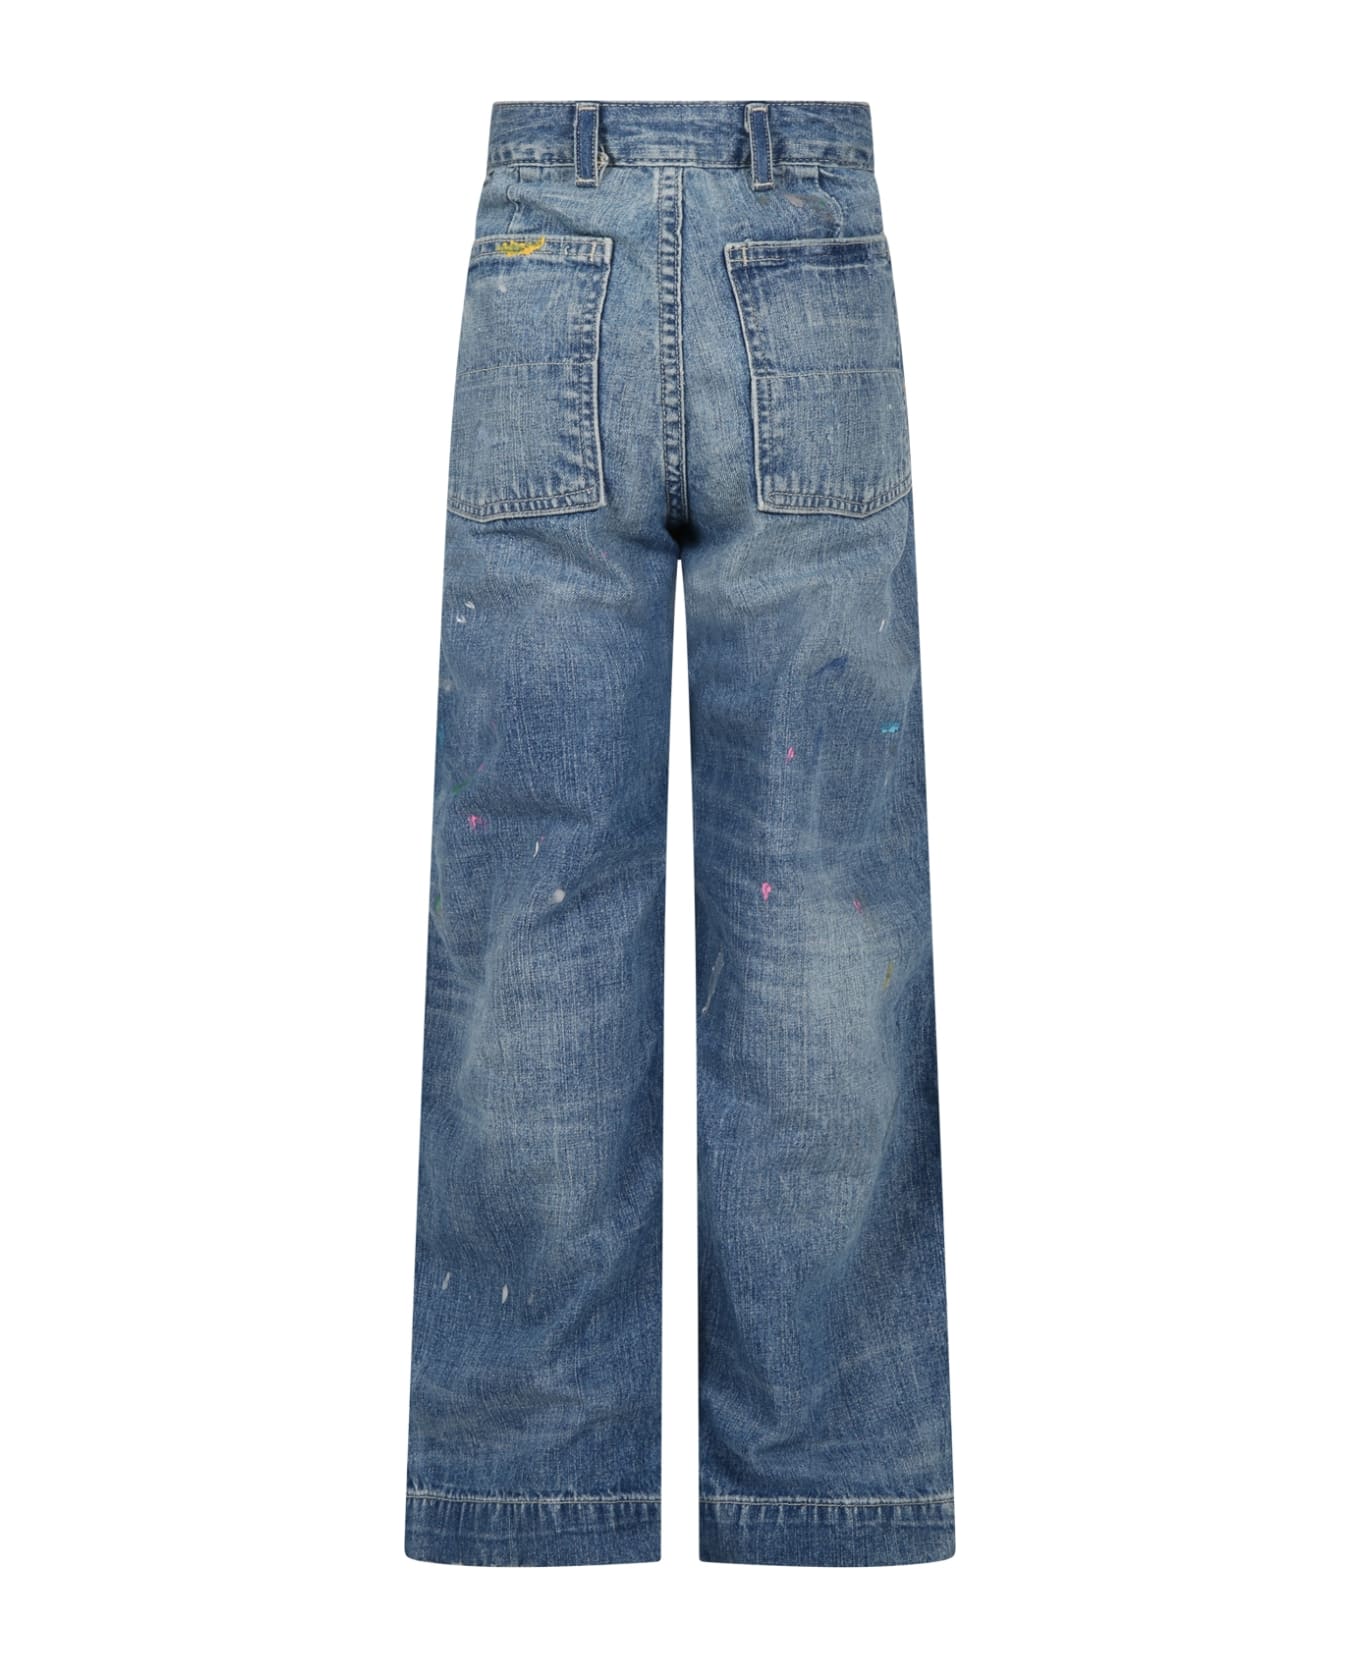 Ralph Lauren Blue Jeans With Spots Of Colour - Denim